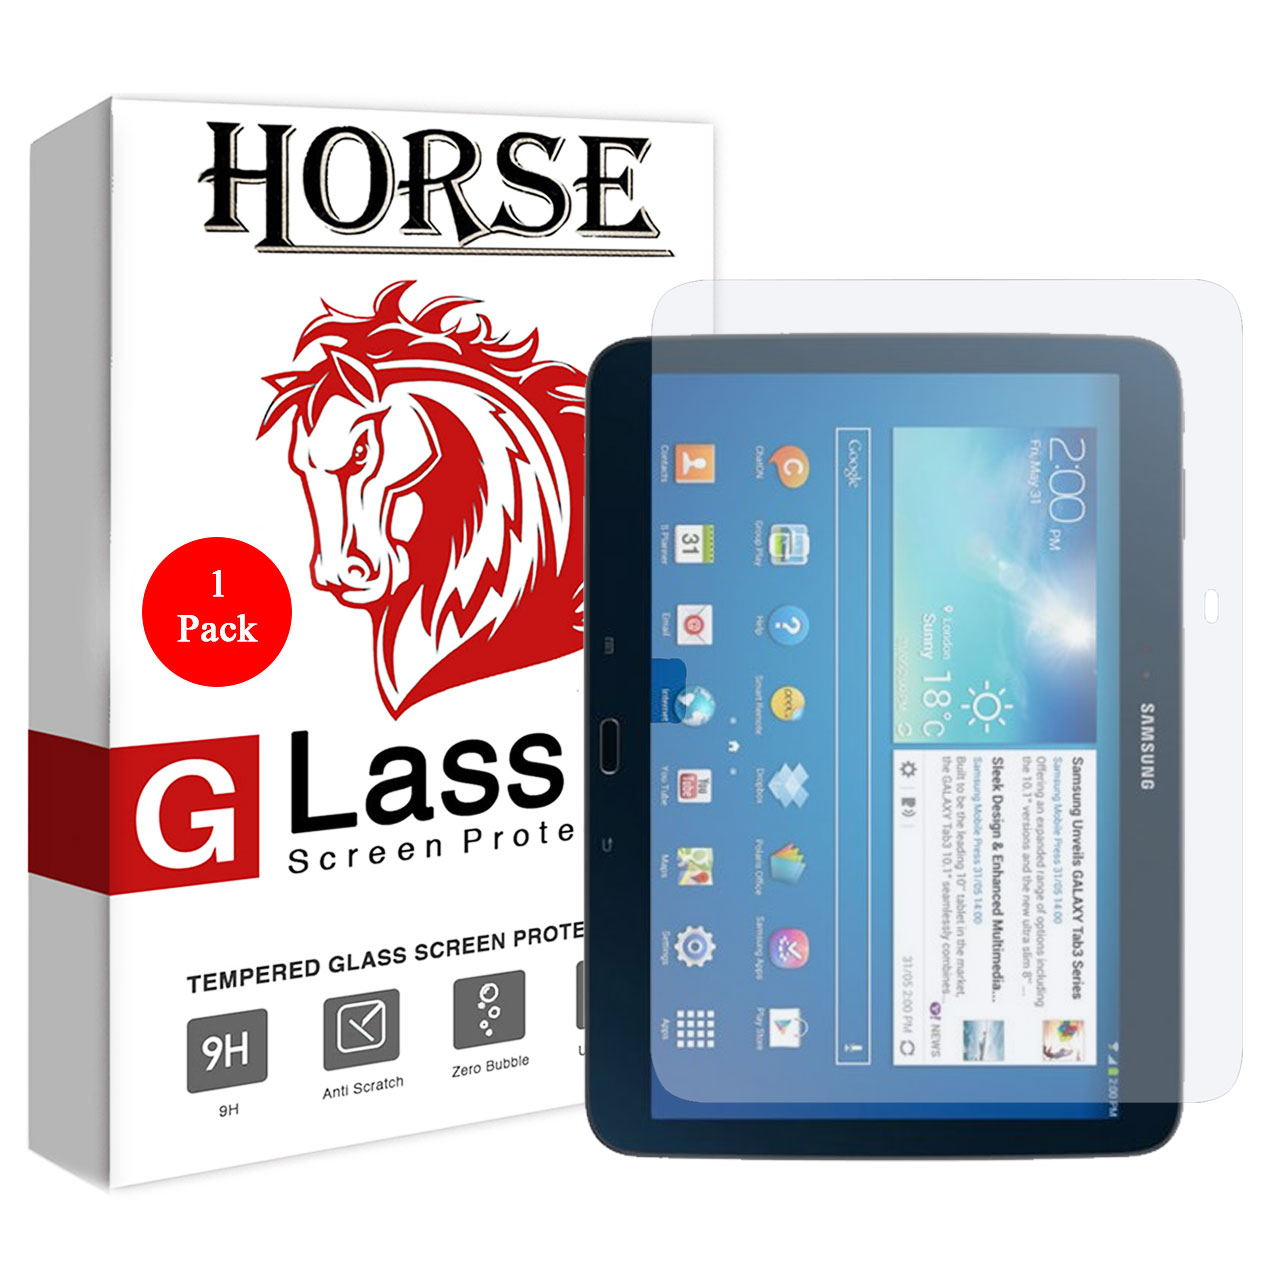 محافظ صفحه نمایش گلس هورس مدل UCC مناسب برای تبلت سامسونگ Galaxy Tab 3 10.1 P5200